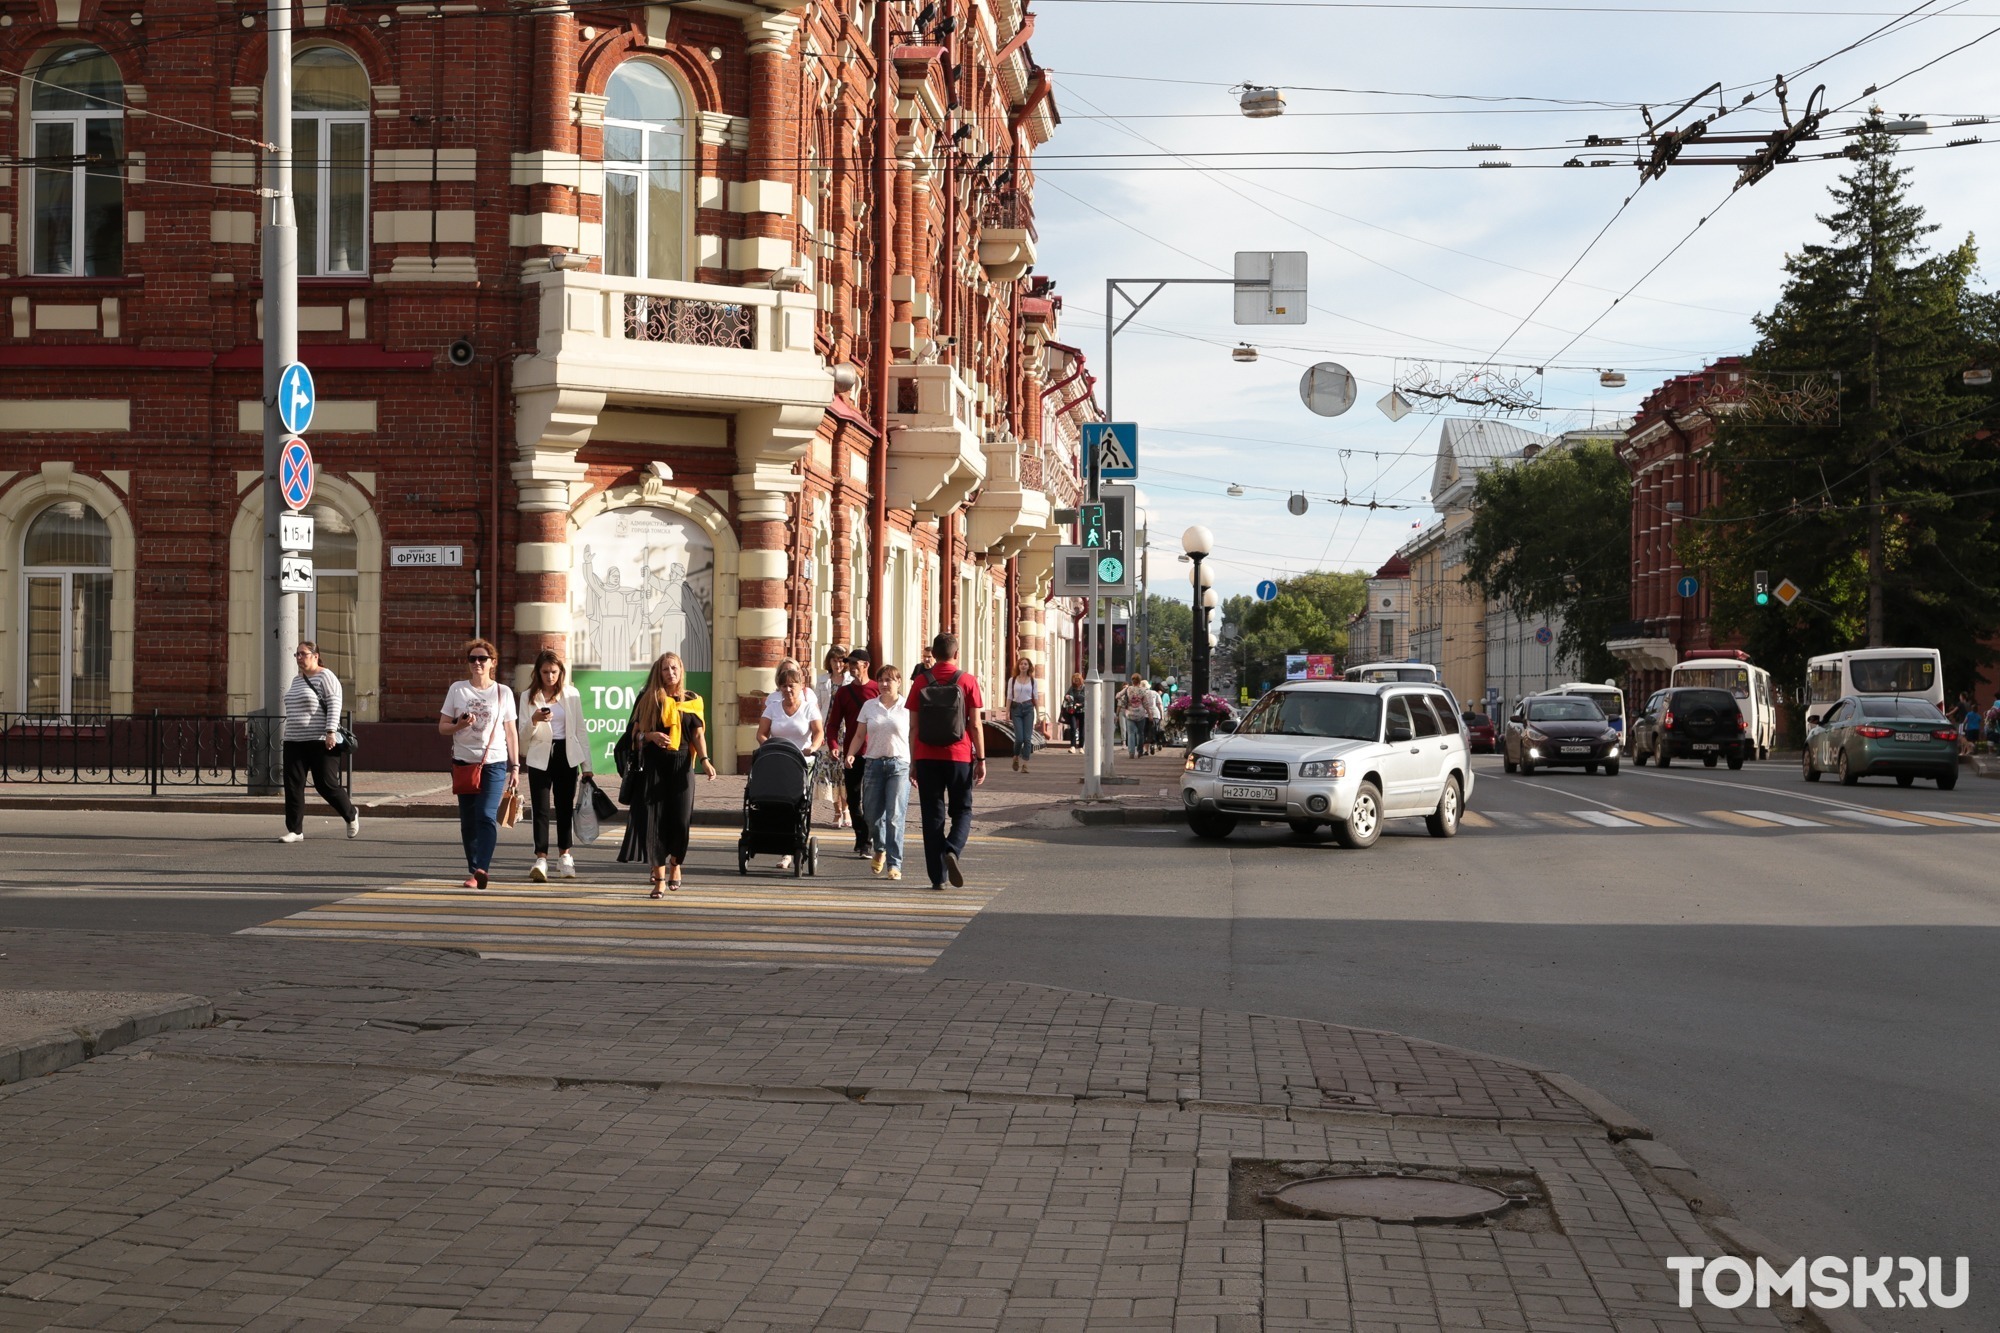 Расширение территории: в Томске пройдет новосибирский фестиваль осознанного потребления